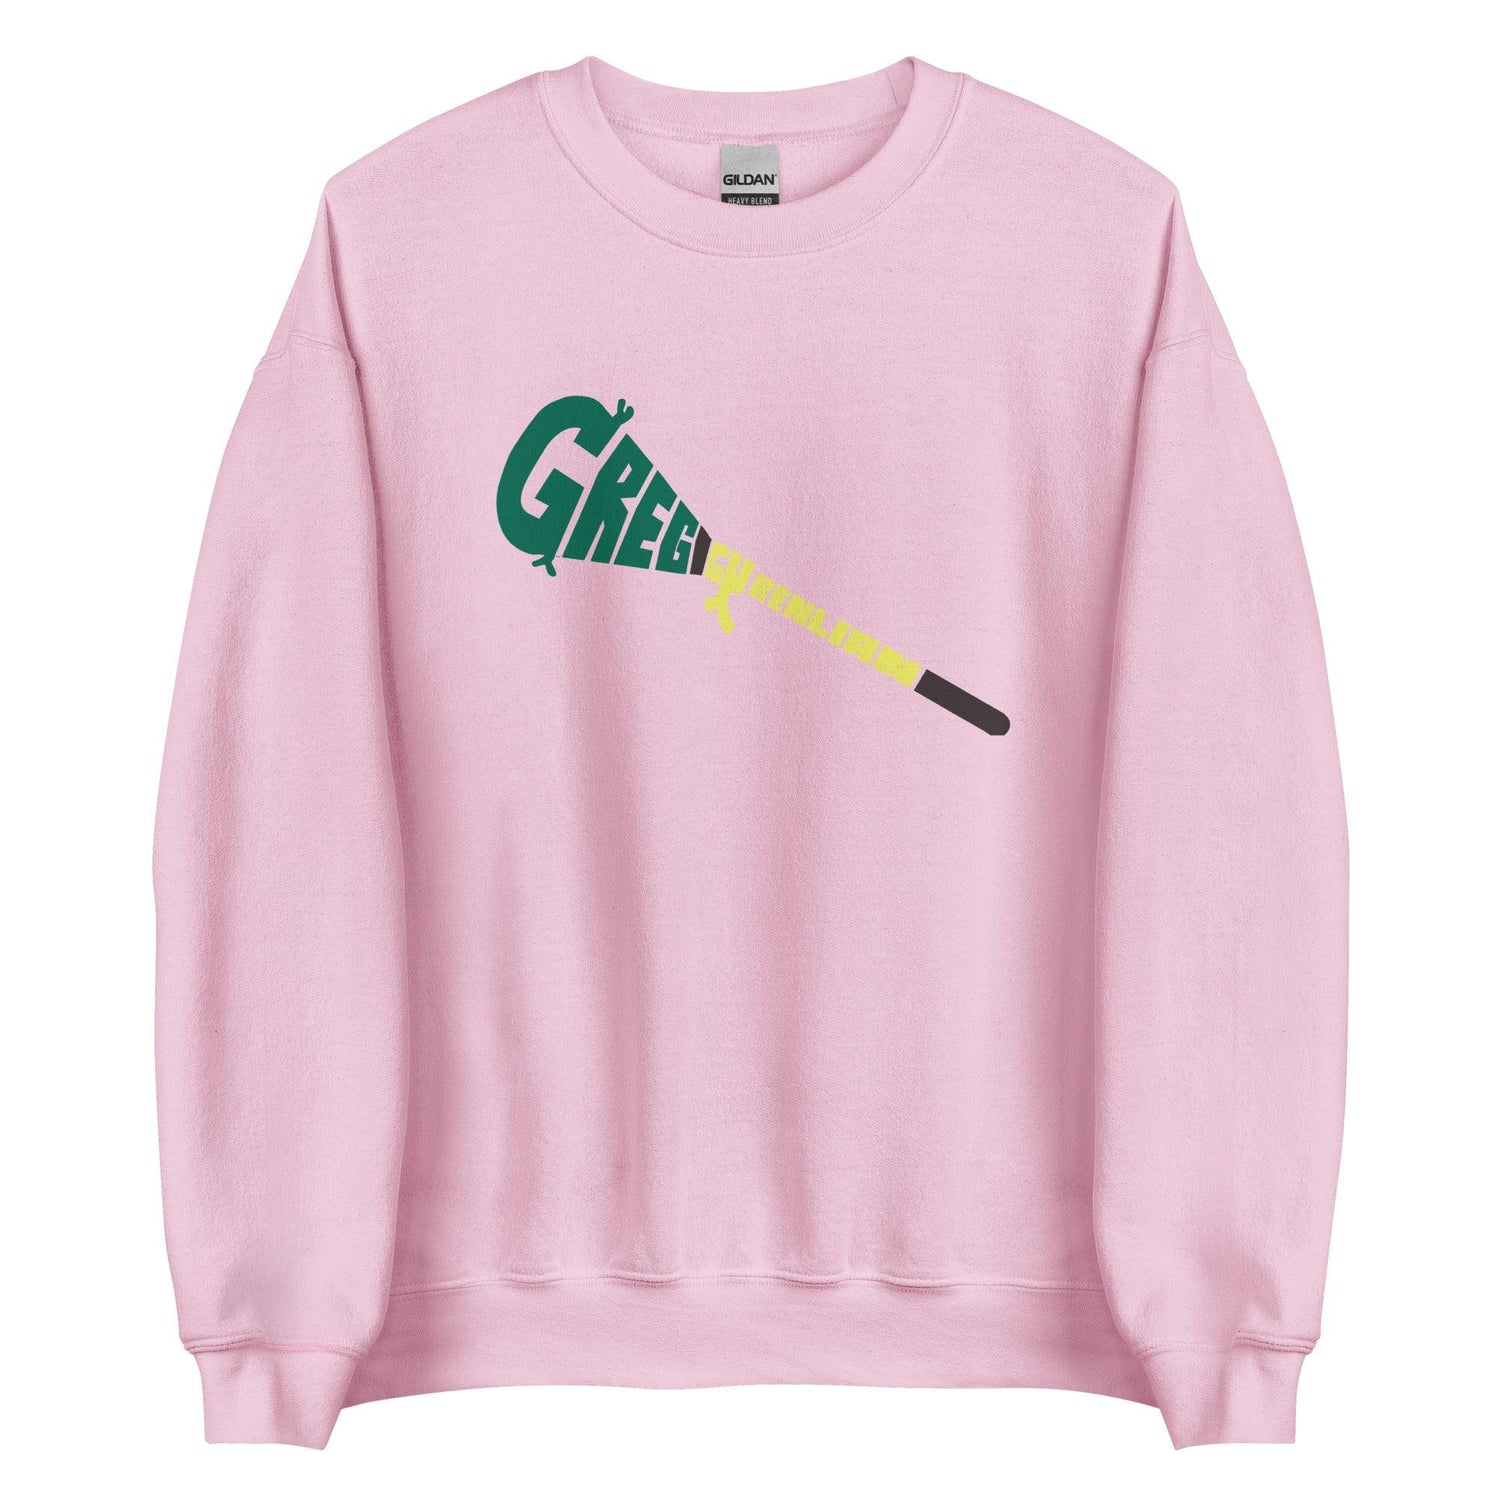 Greg Gurenlian "Essential" Sweatshirt - Fan Arch